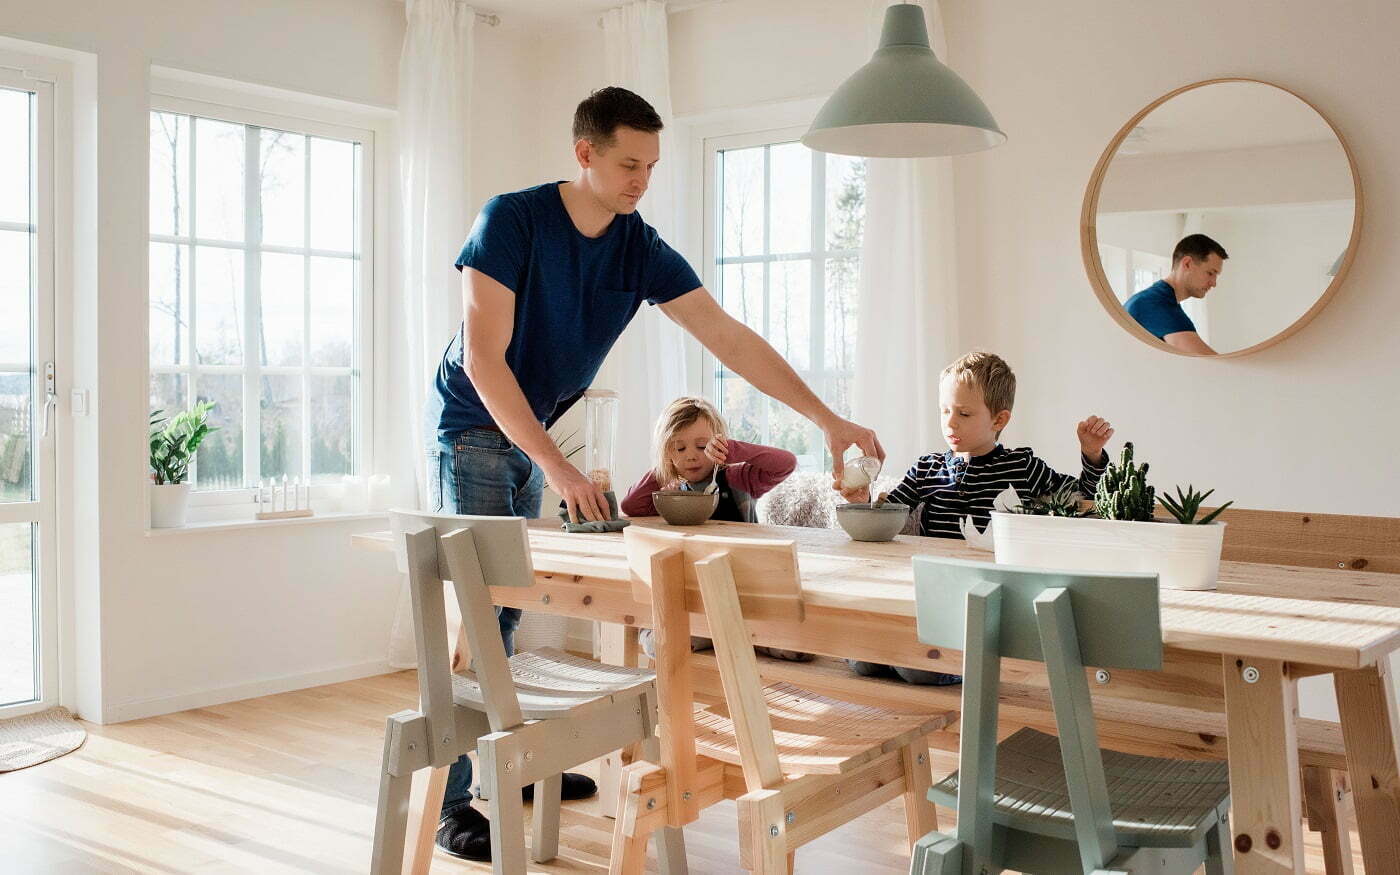 Isä kattaa lounasta kahdelle lapselle ja he ovat juuri aloittamassa ruokailun kauniissa kodissaan puisen pöydän äärellä Retta